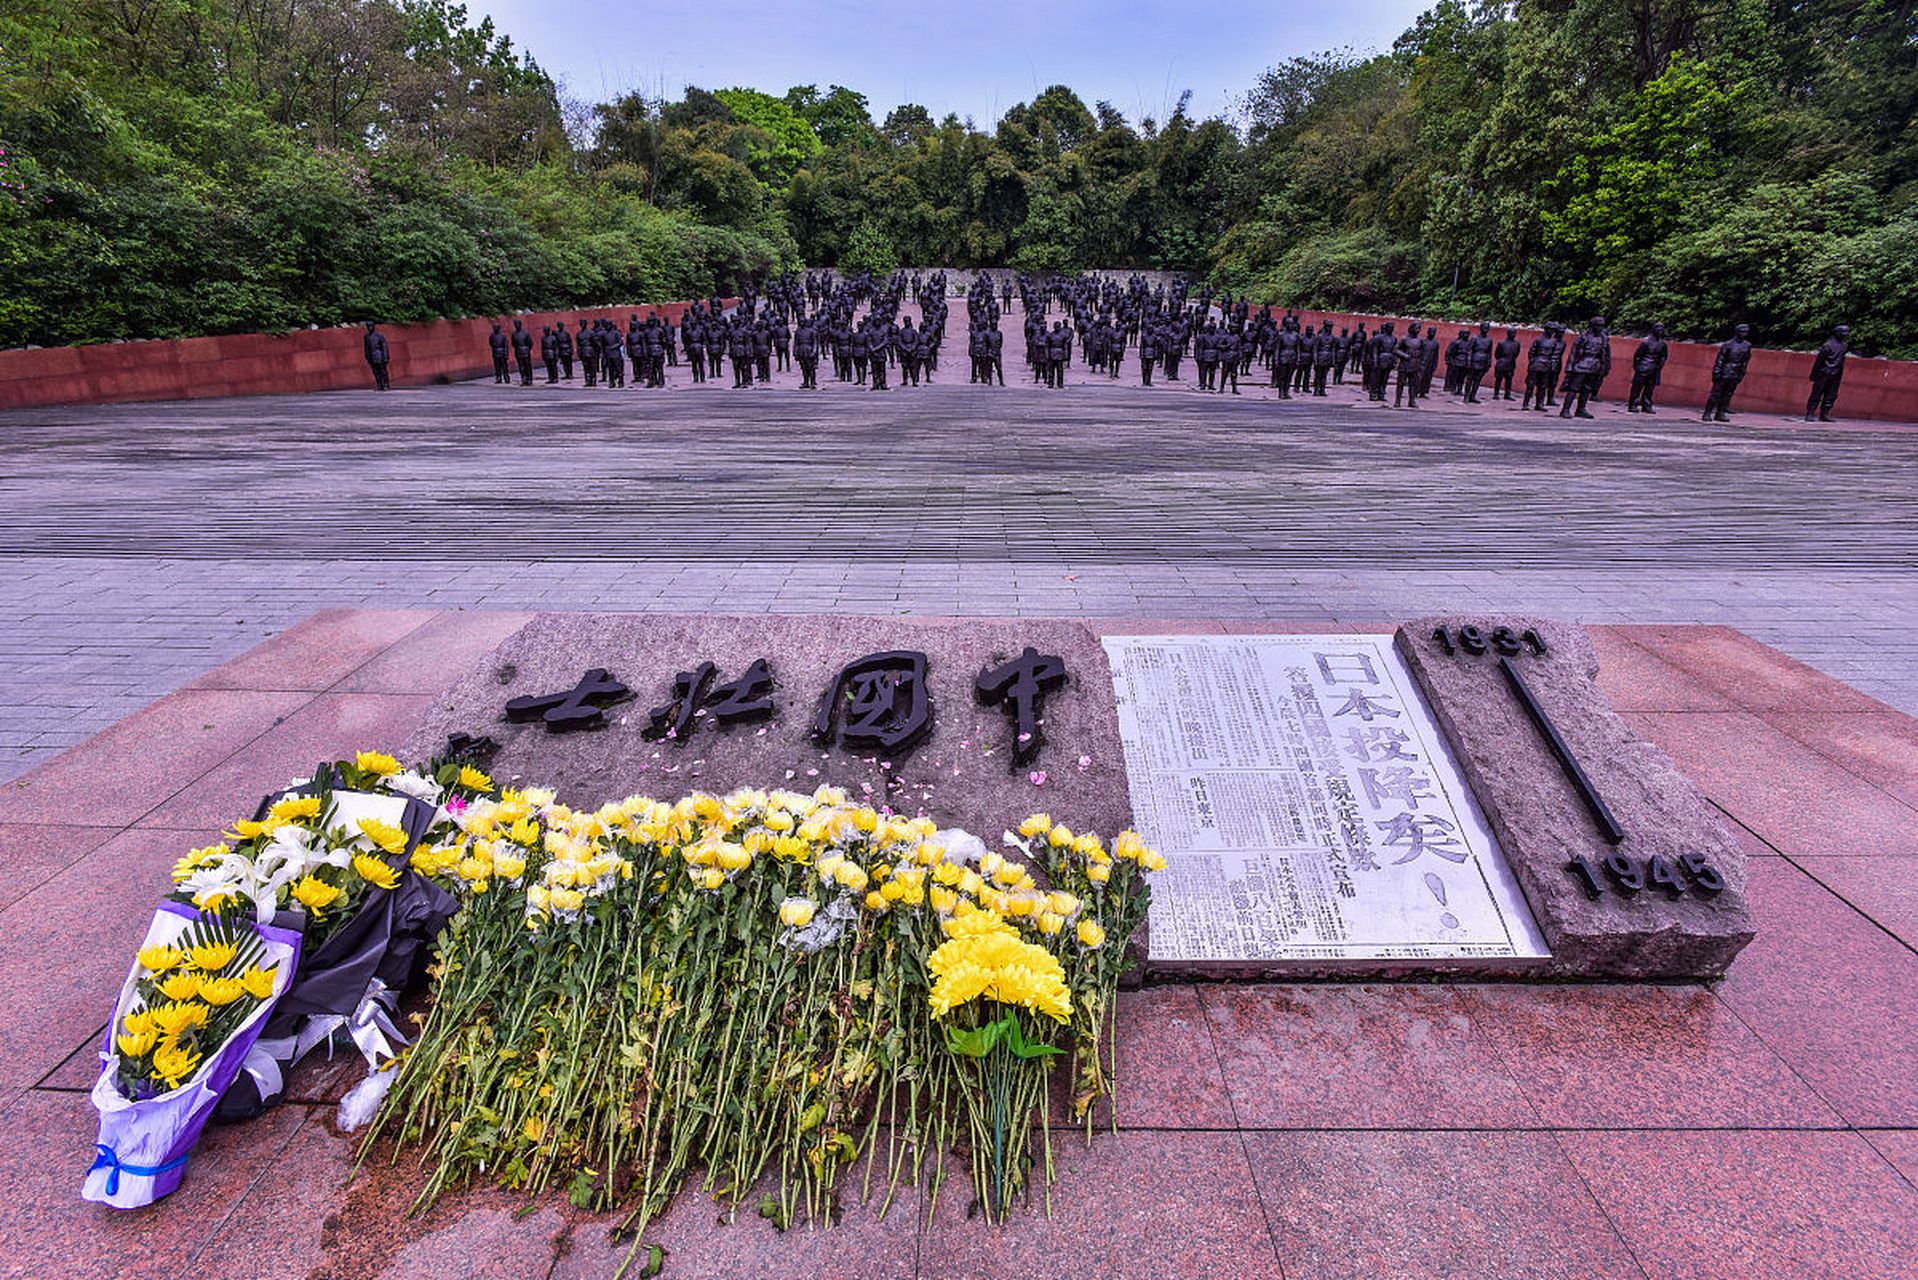 歌乐山革命烈士陵园图片